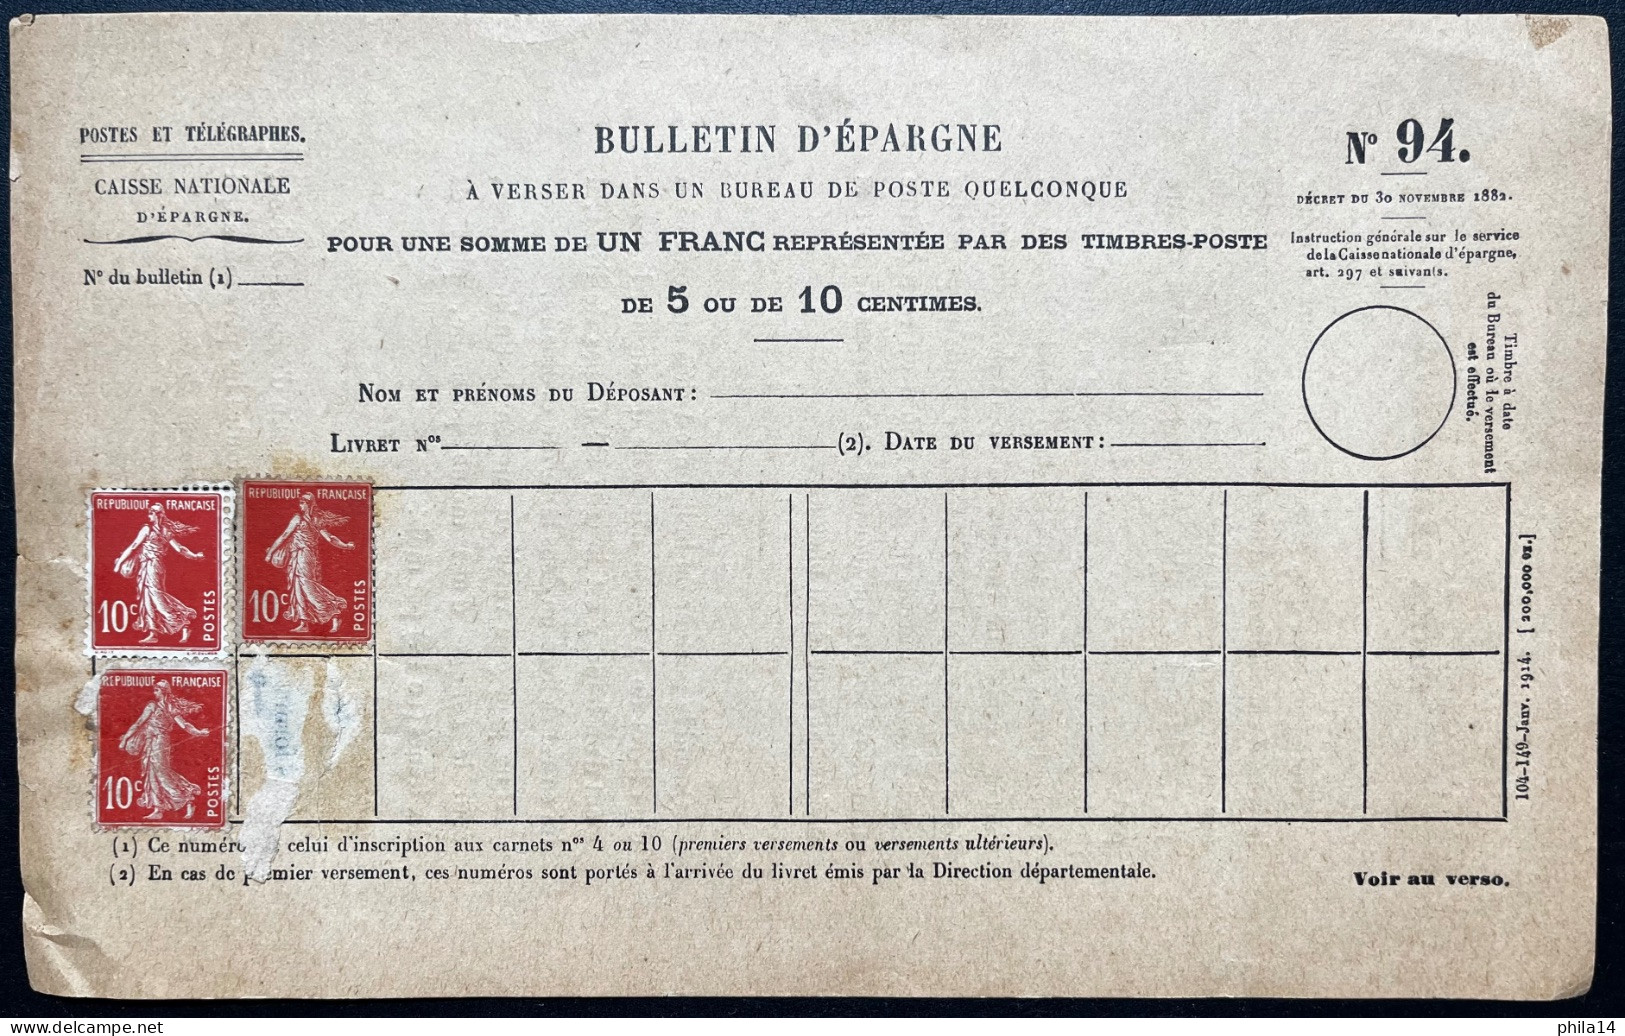 3X 10c SEMEUSE NEUFS SUR BULLETIN D'EPAGNE POSTES ET TELEGRAPHES N°94 - Documents De La Poste